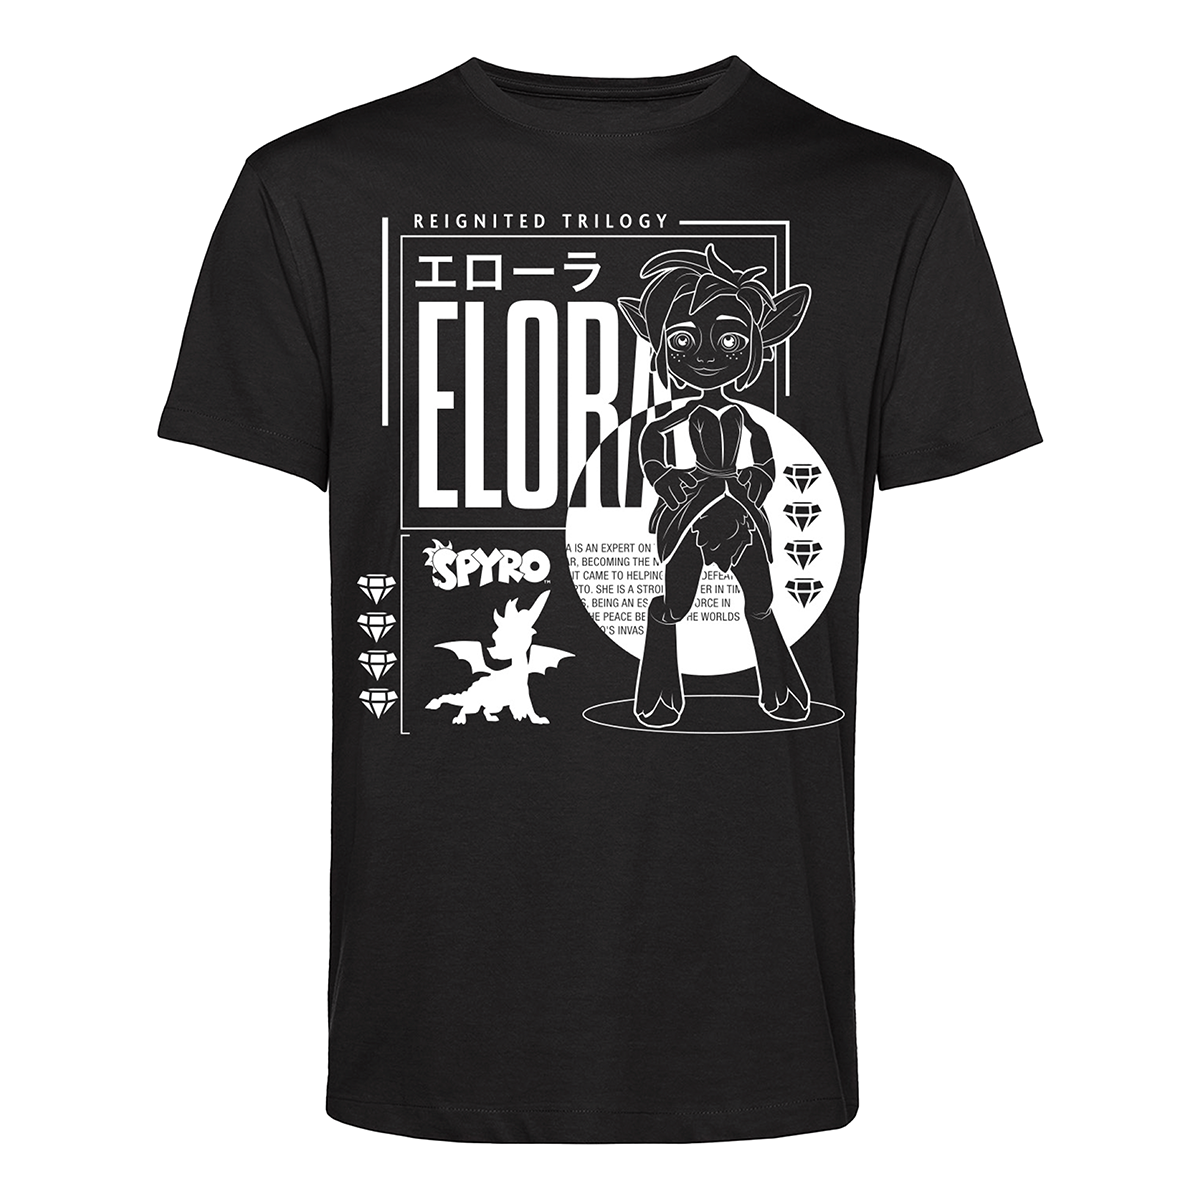 Elora T-shirt